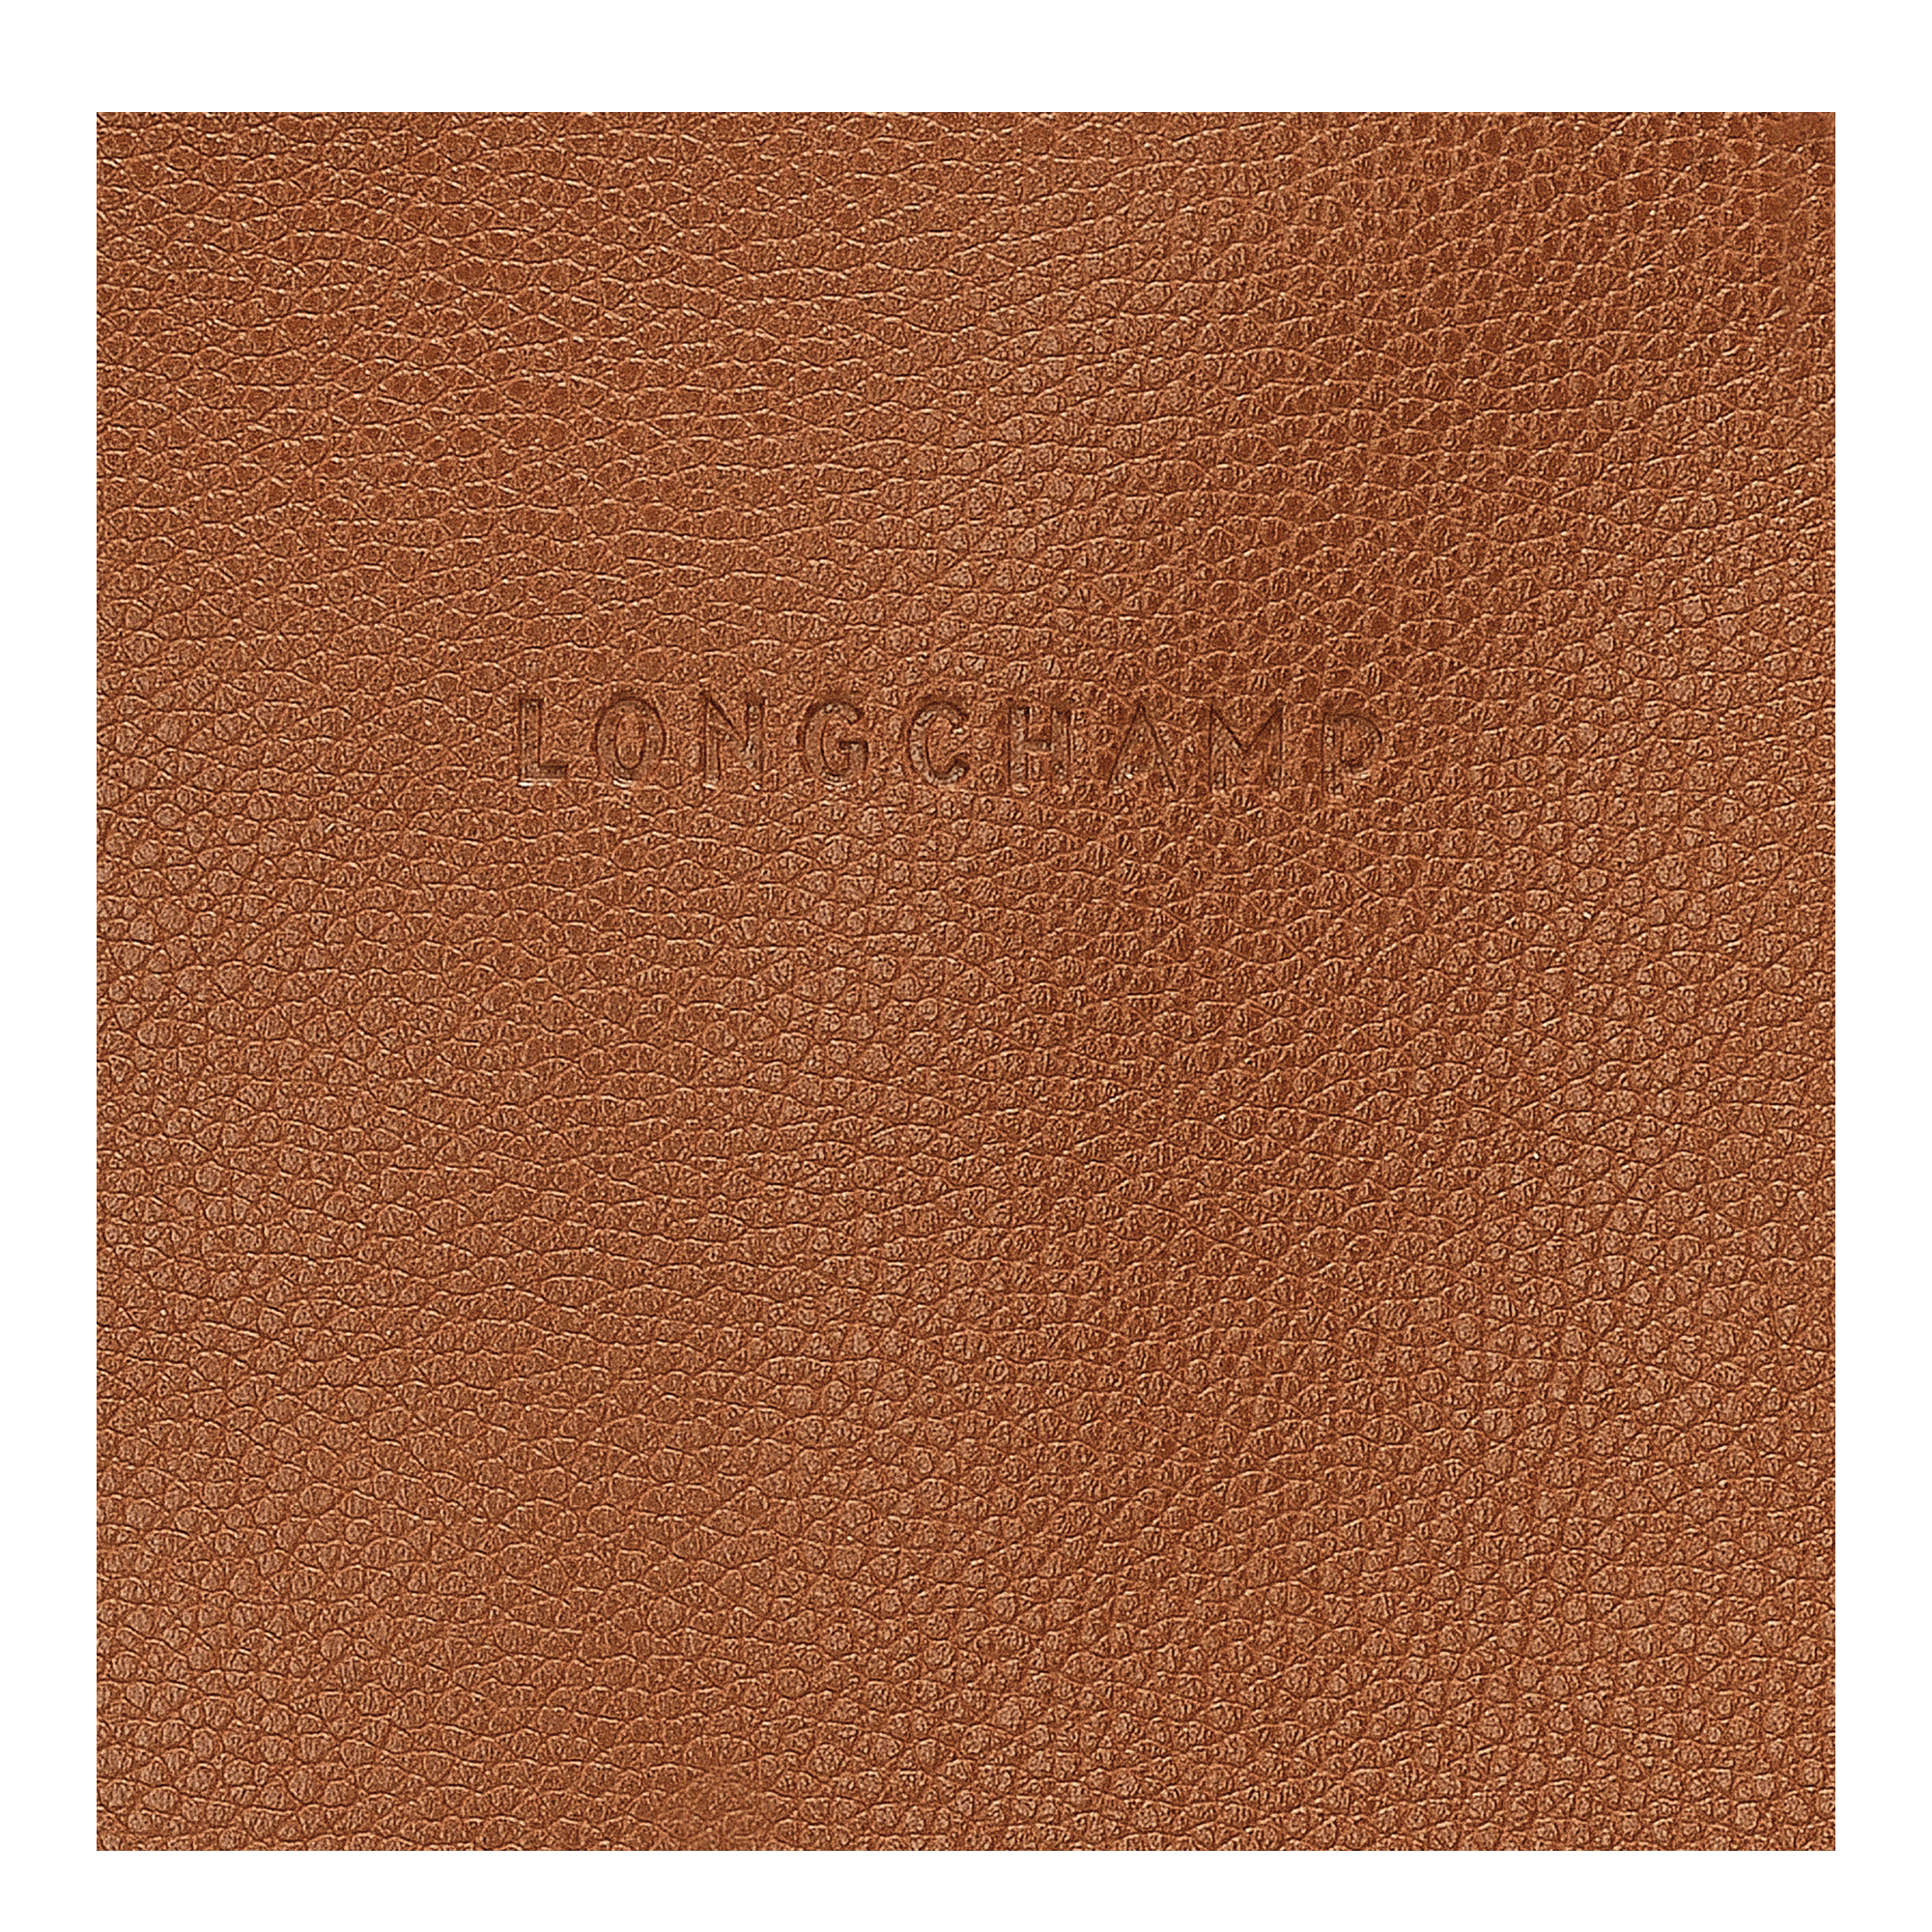 Le Foulonné 系列 手提包 S, 淡紅褐色